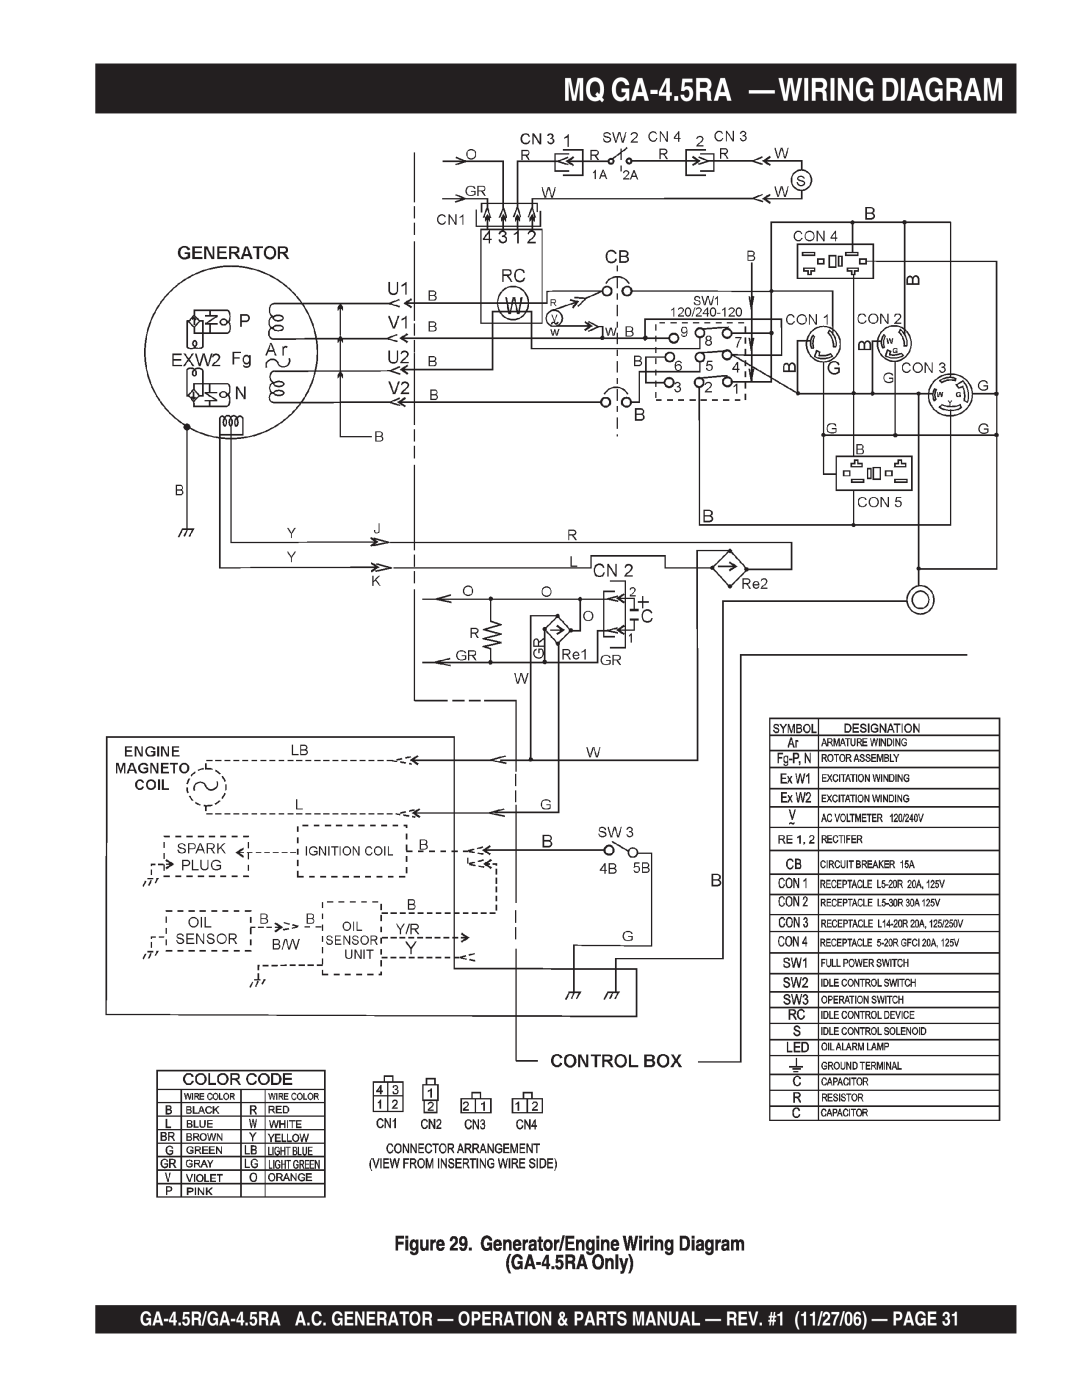 Multiquip GA4.5RA manual MQ GA-4.5RA -WIRING DIAGRAM, Generator/Engine Wiring Diagram GA-4.5RA Only 